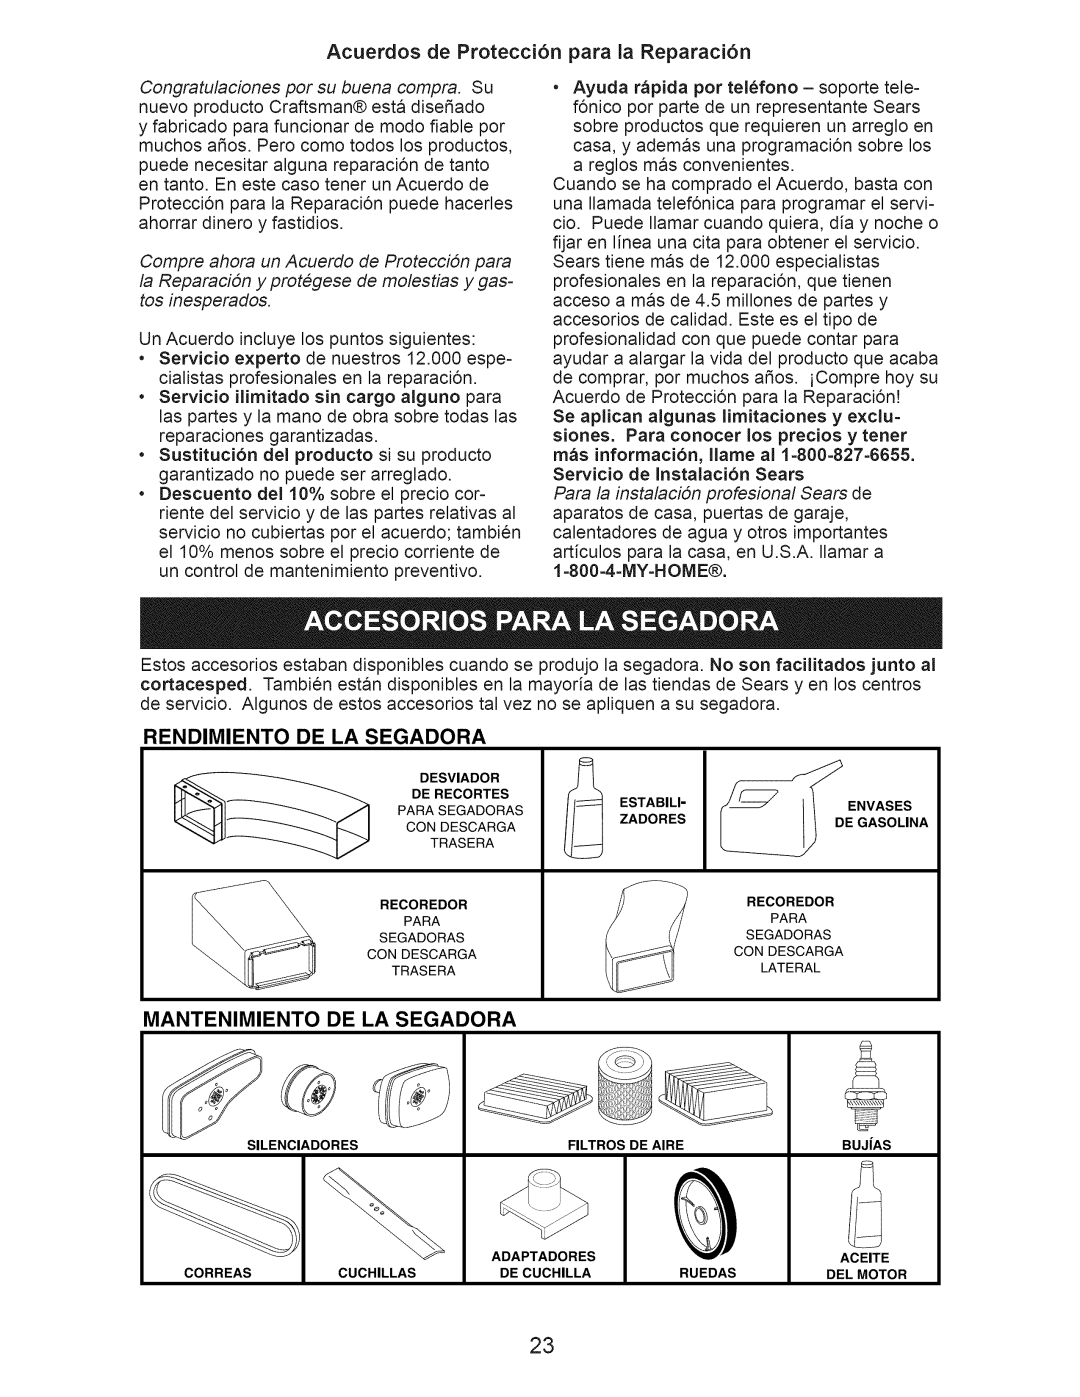 Craftsman 917.376543 manual Acuerdos de Protecci6n para la Reparaci6n, Rendimiento, De La Segadora, Mantenimiento 